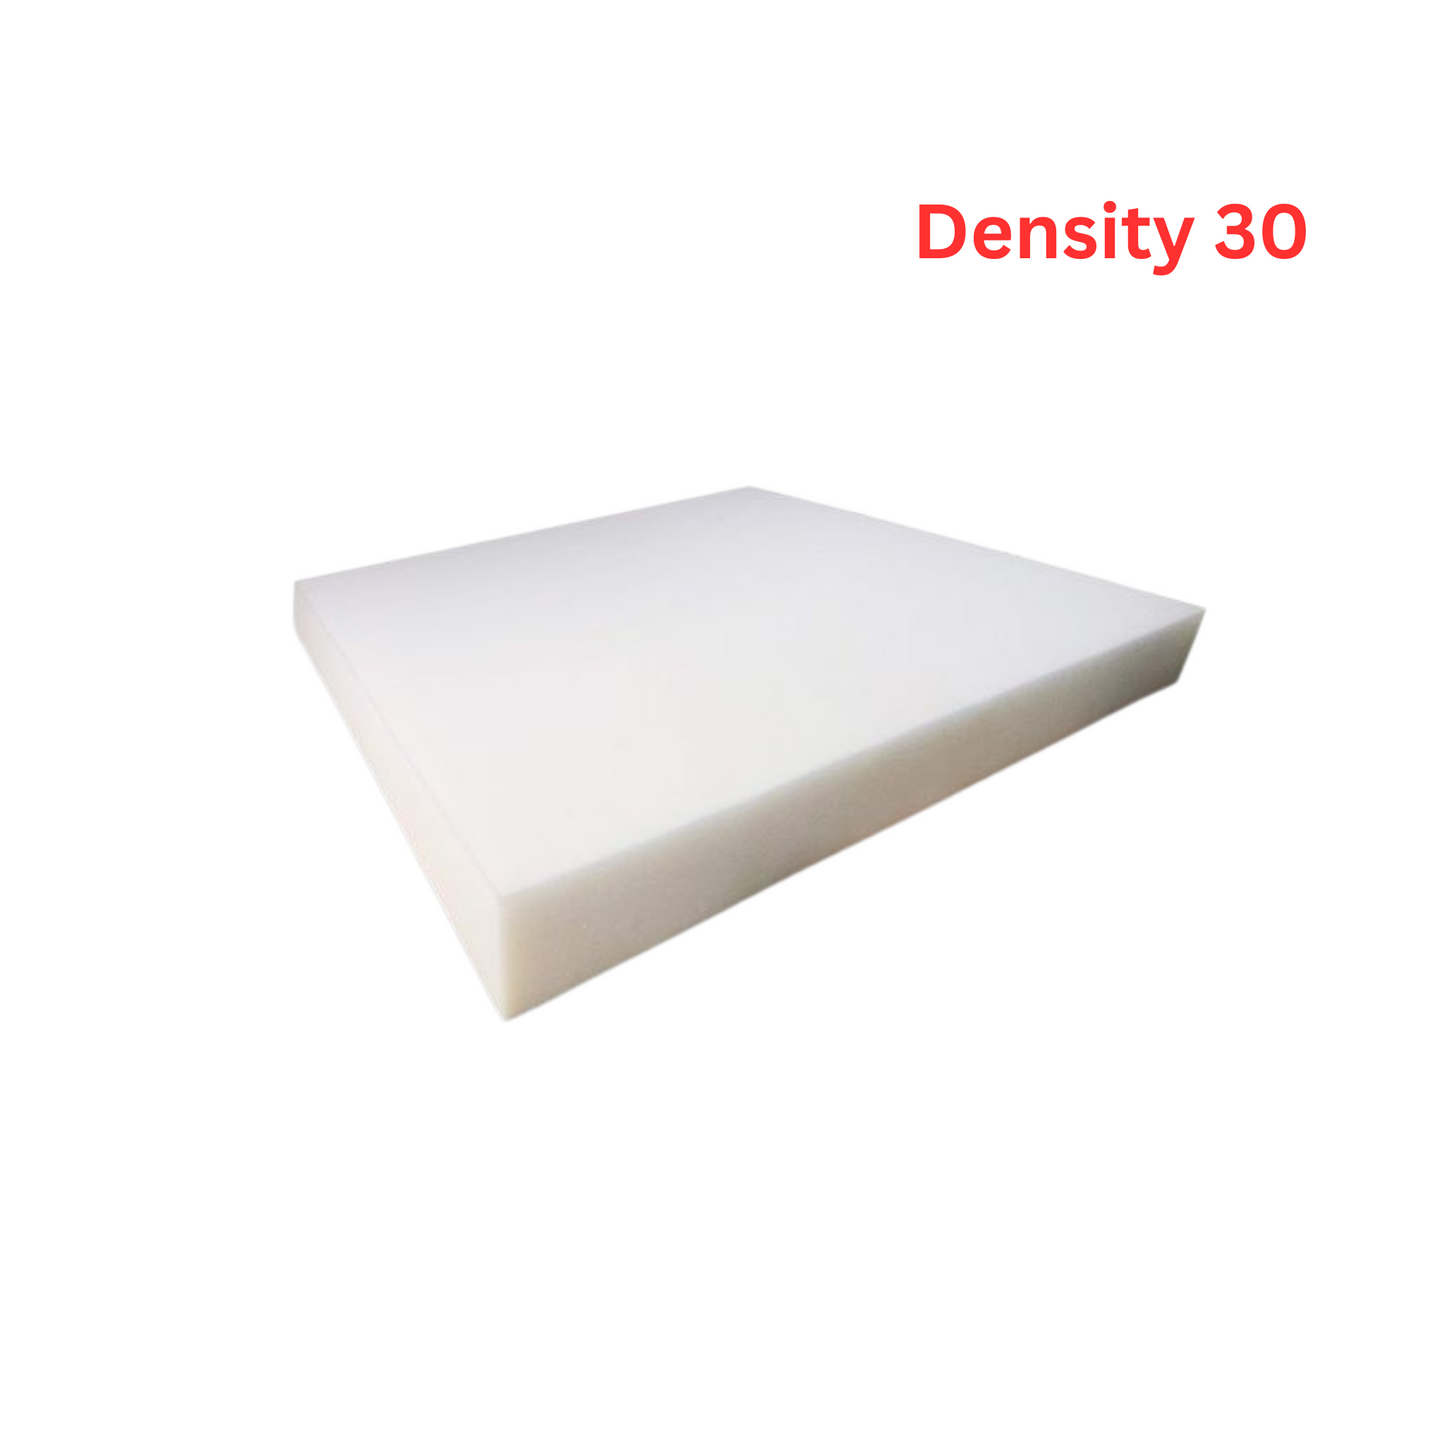 Foam Density 30